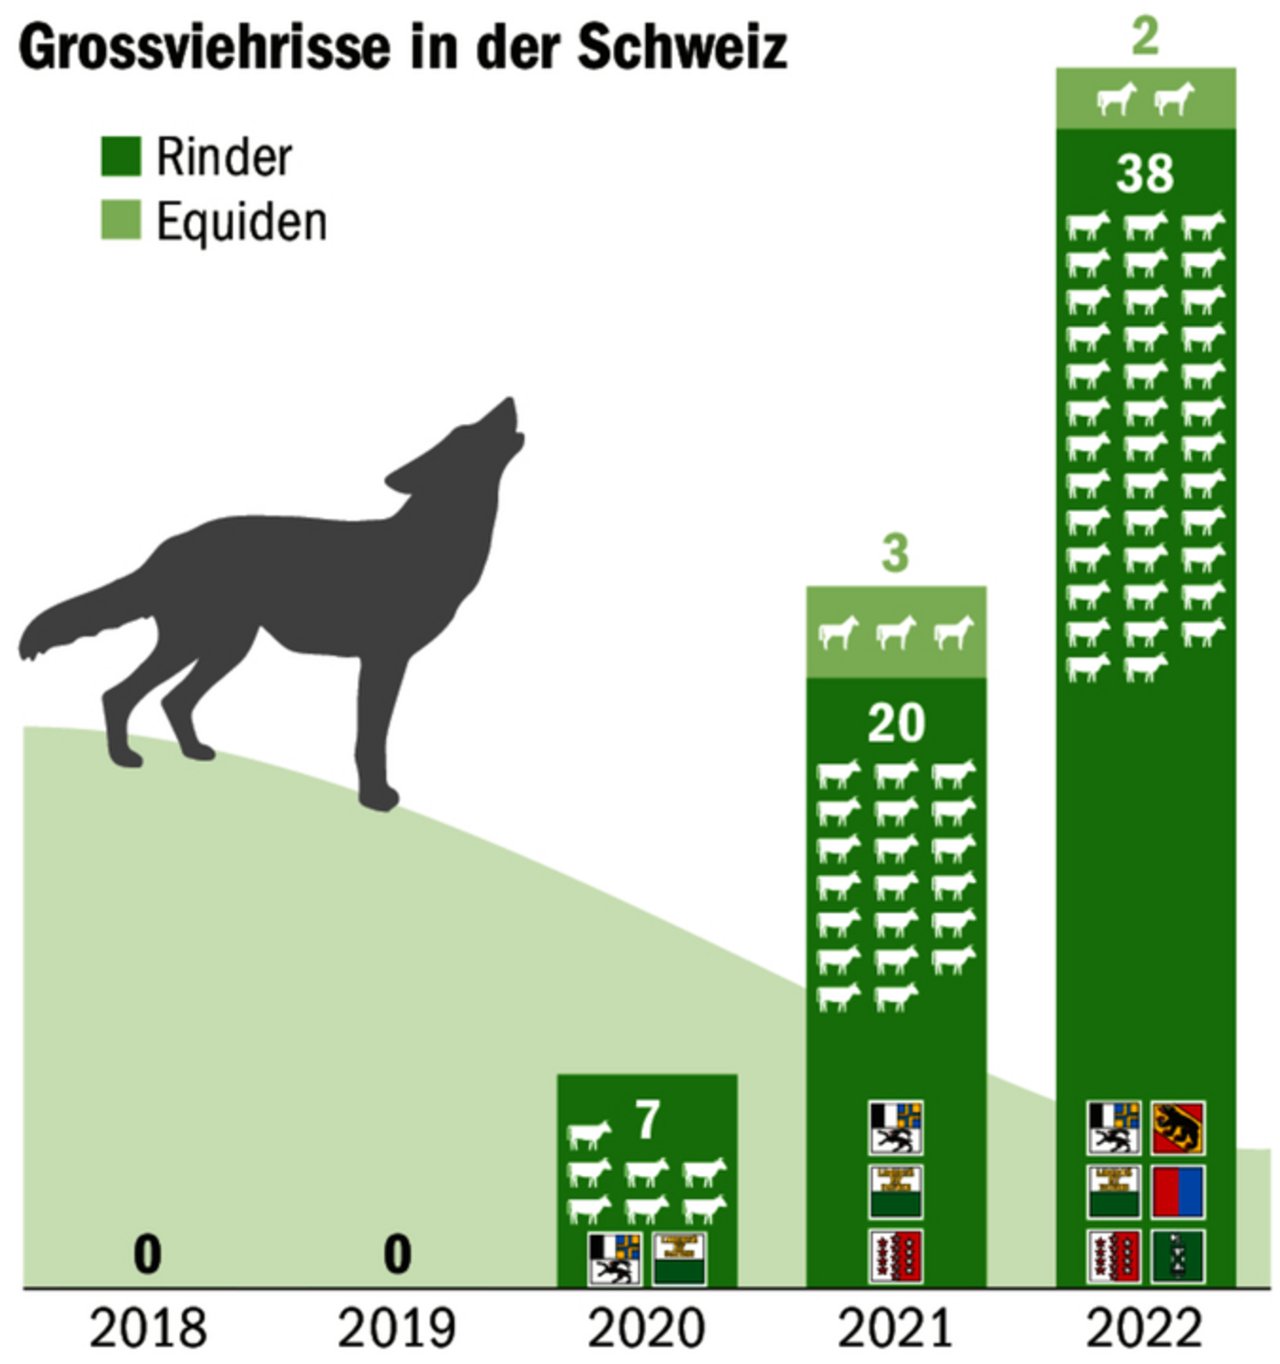 Seit 2020 gibt es von Wölfen gerissene Rinder und Equiden in der Schweiz, Tendenz steigend.